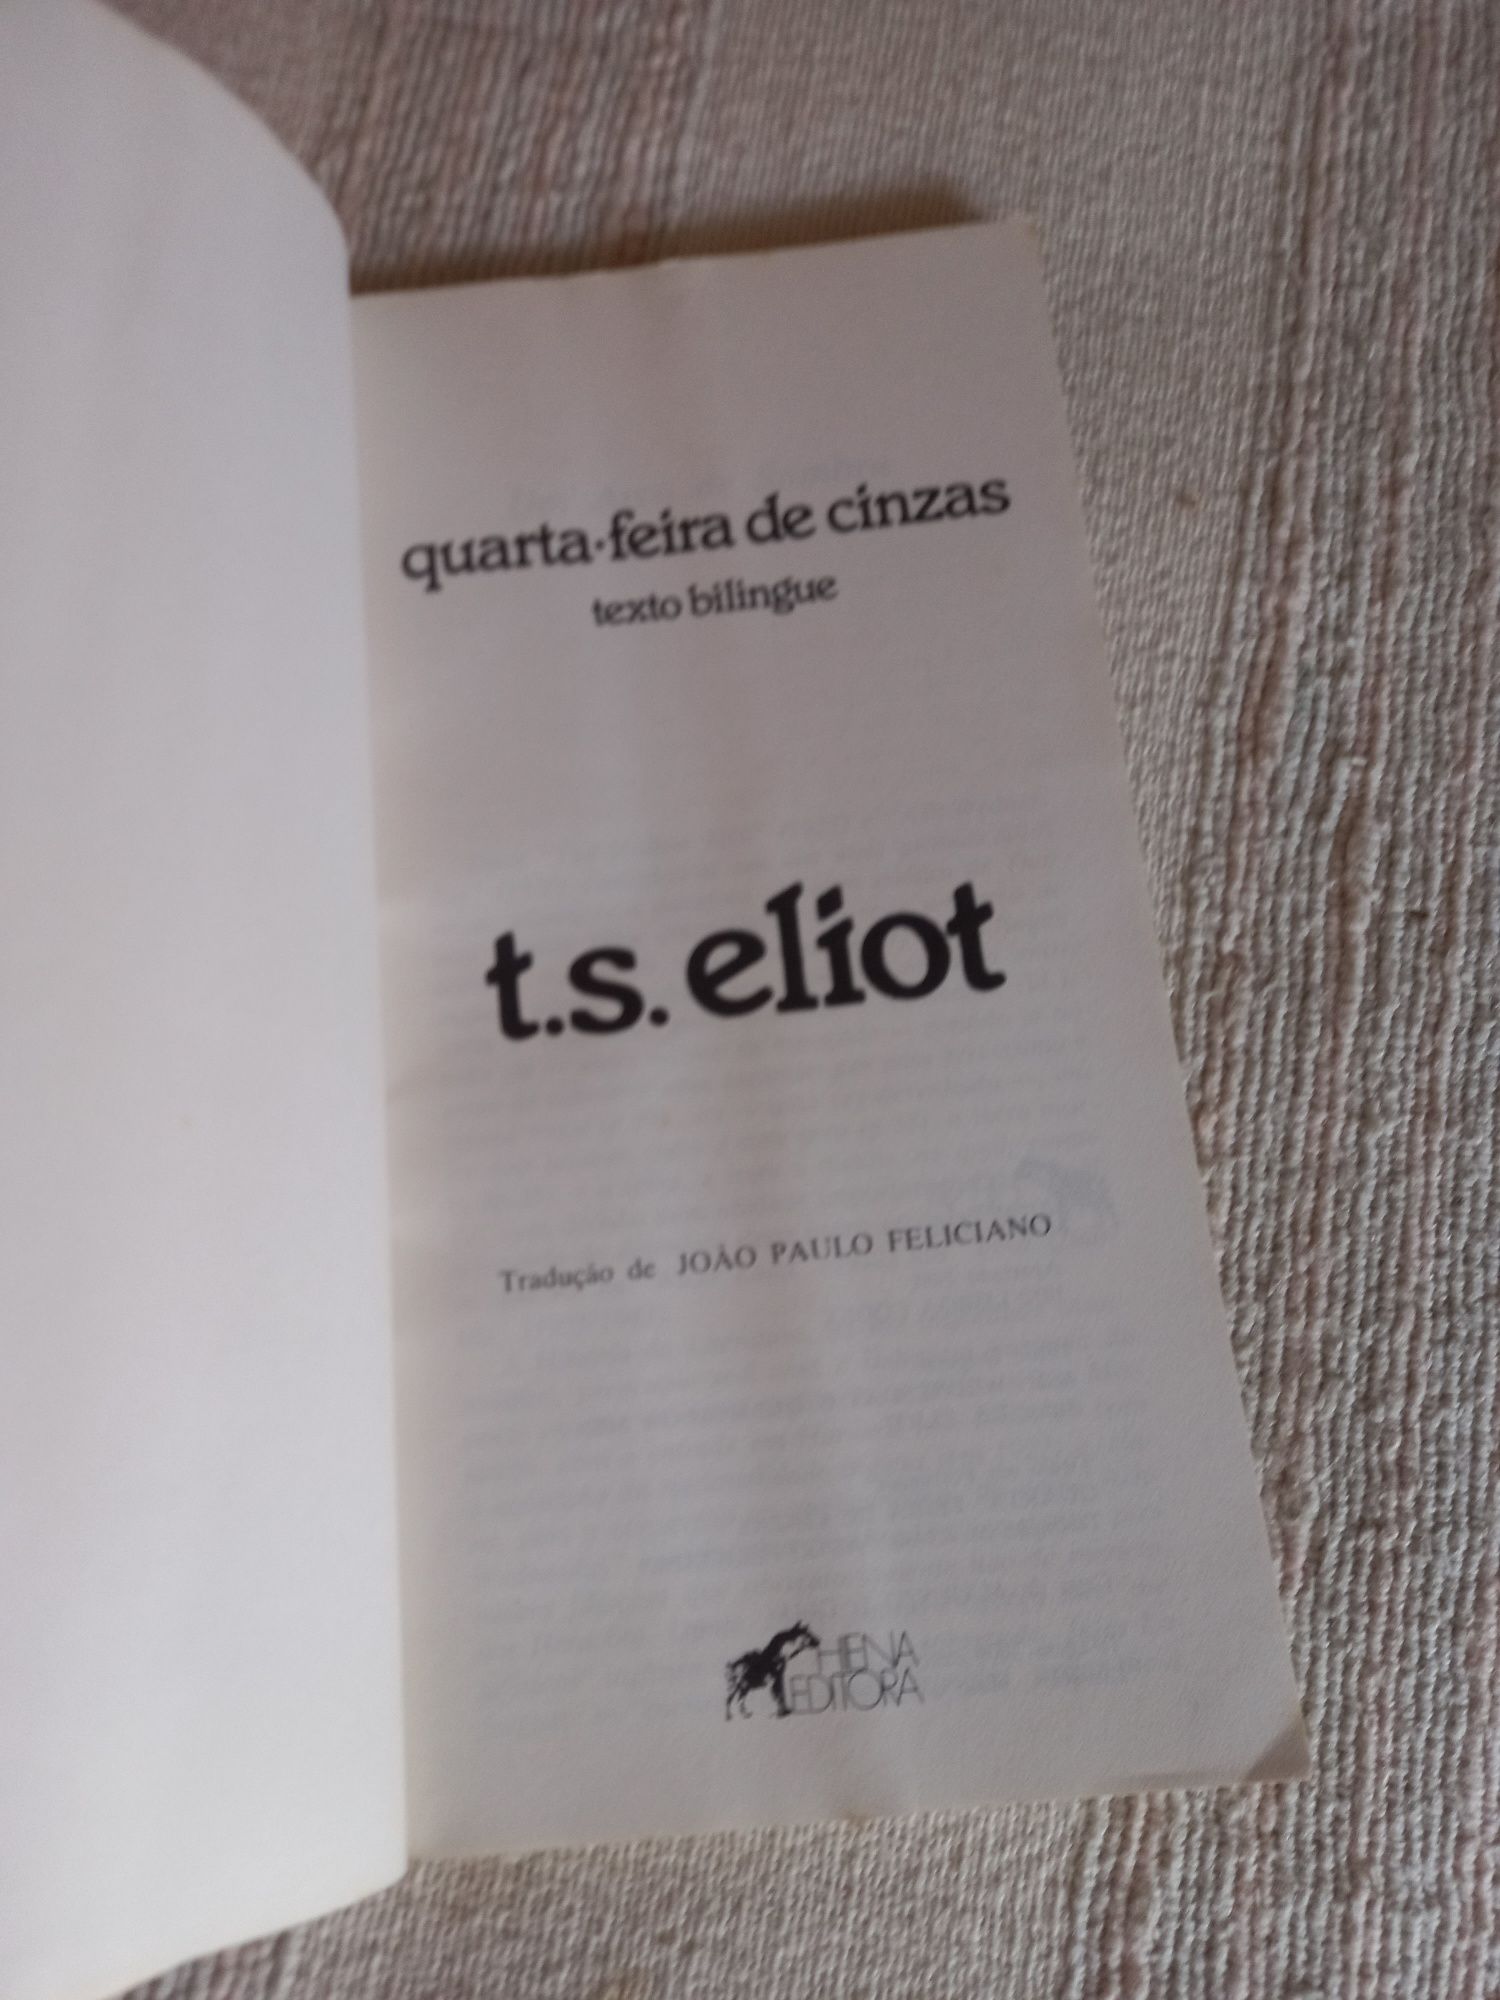 T. S. Eliot Quarta feira de Cinzas bilingue Hiena João Paulo Feliciano